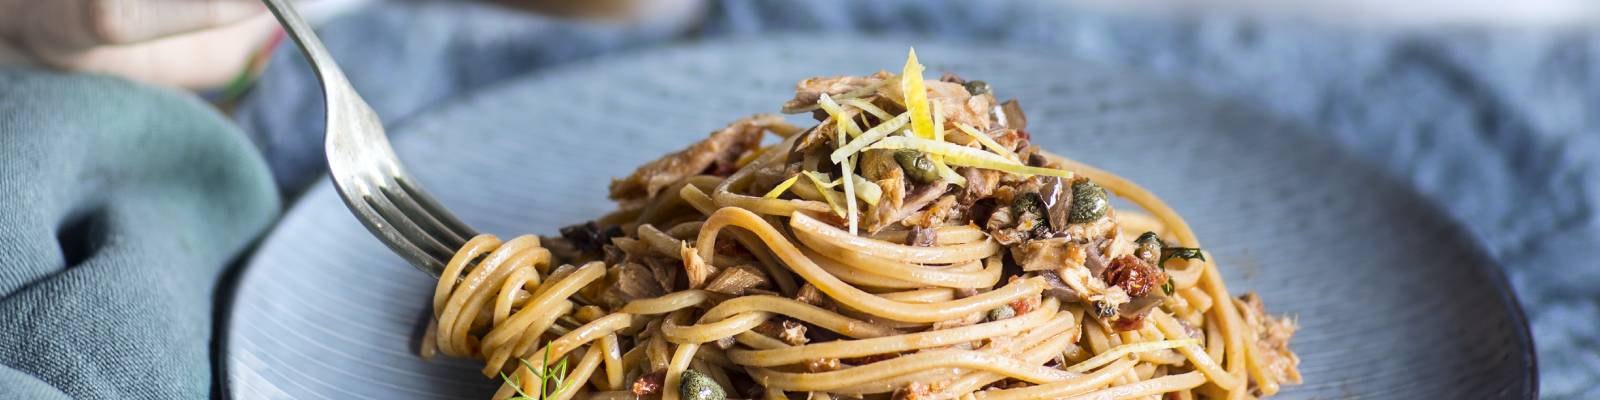 Pasta Garofalo - Spaghetti tonno e buzzonaglia